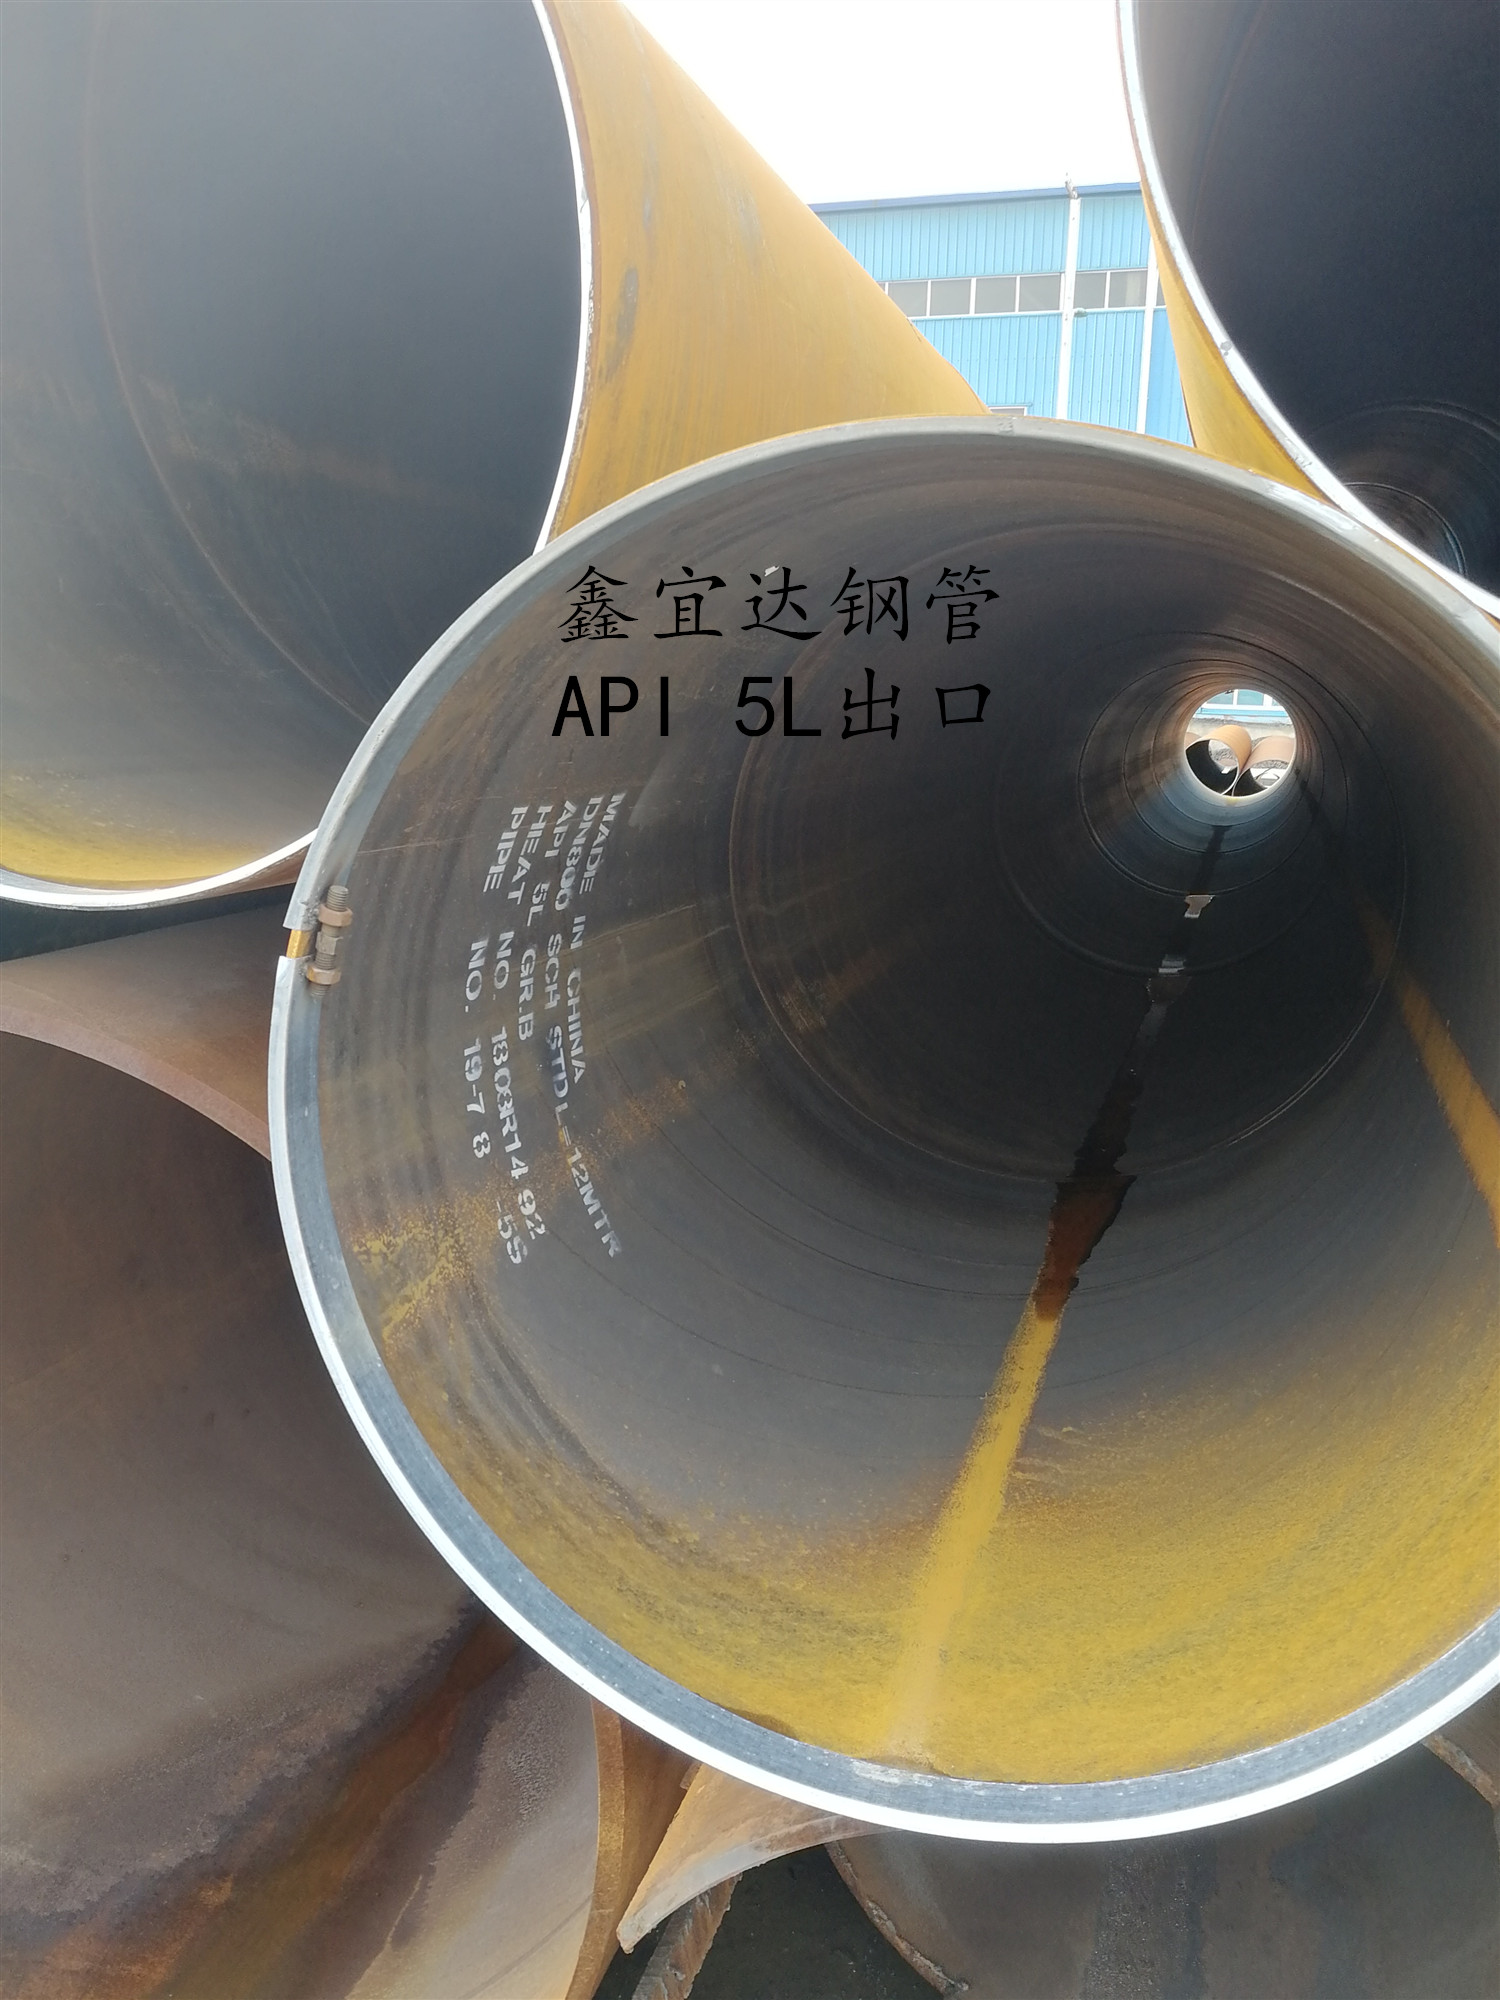 API 5L螺旋鋼管